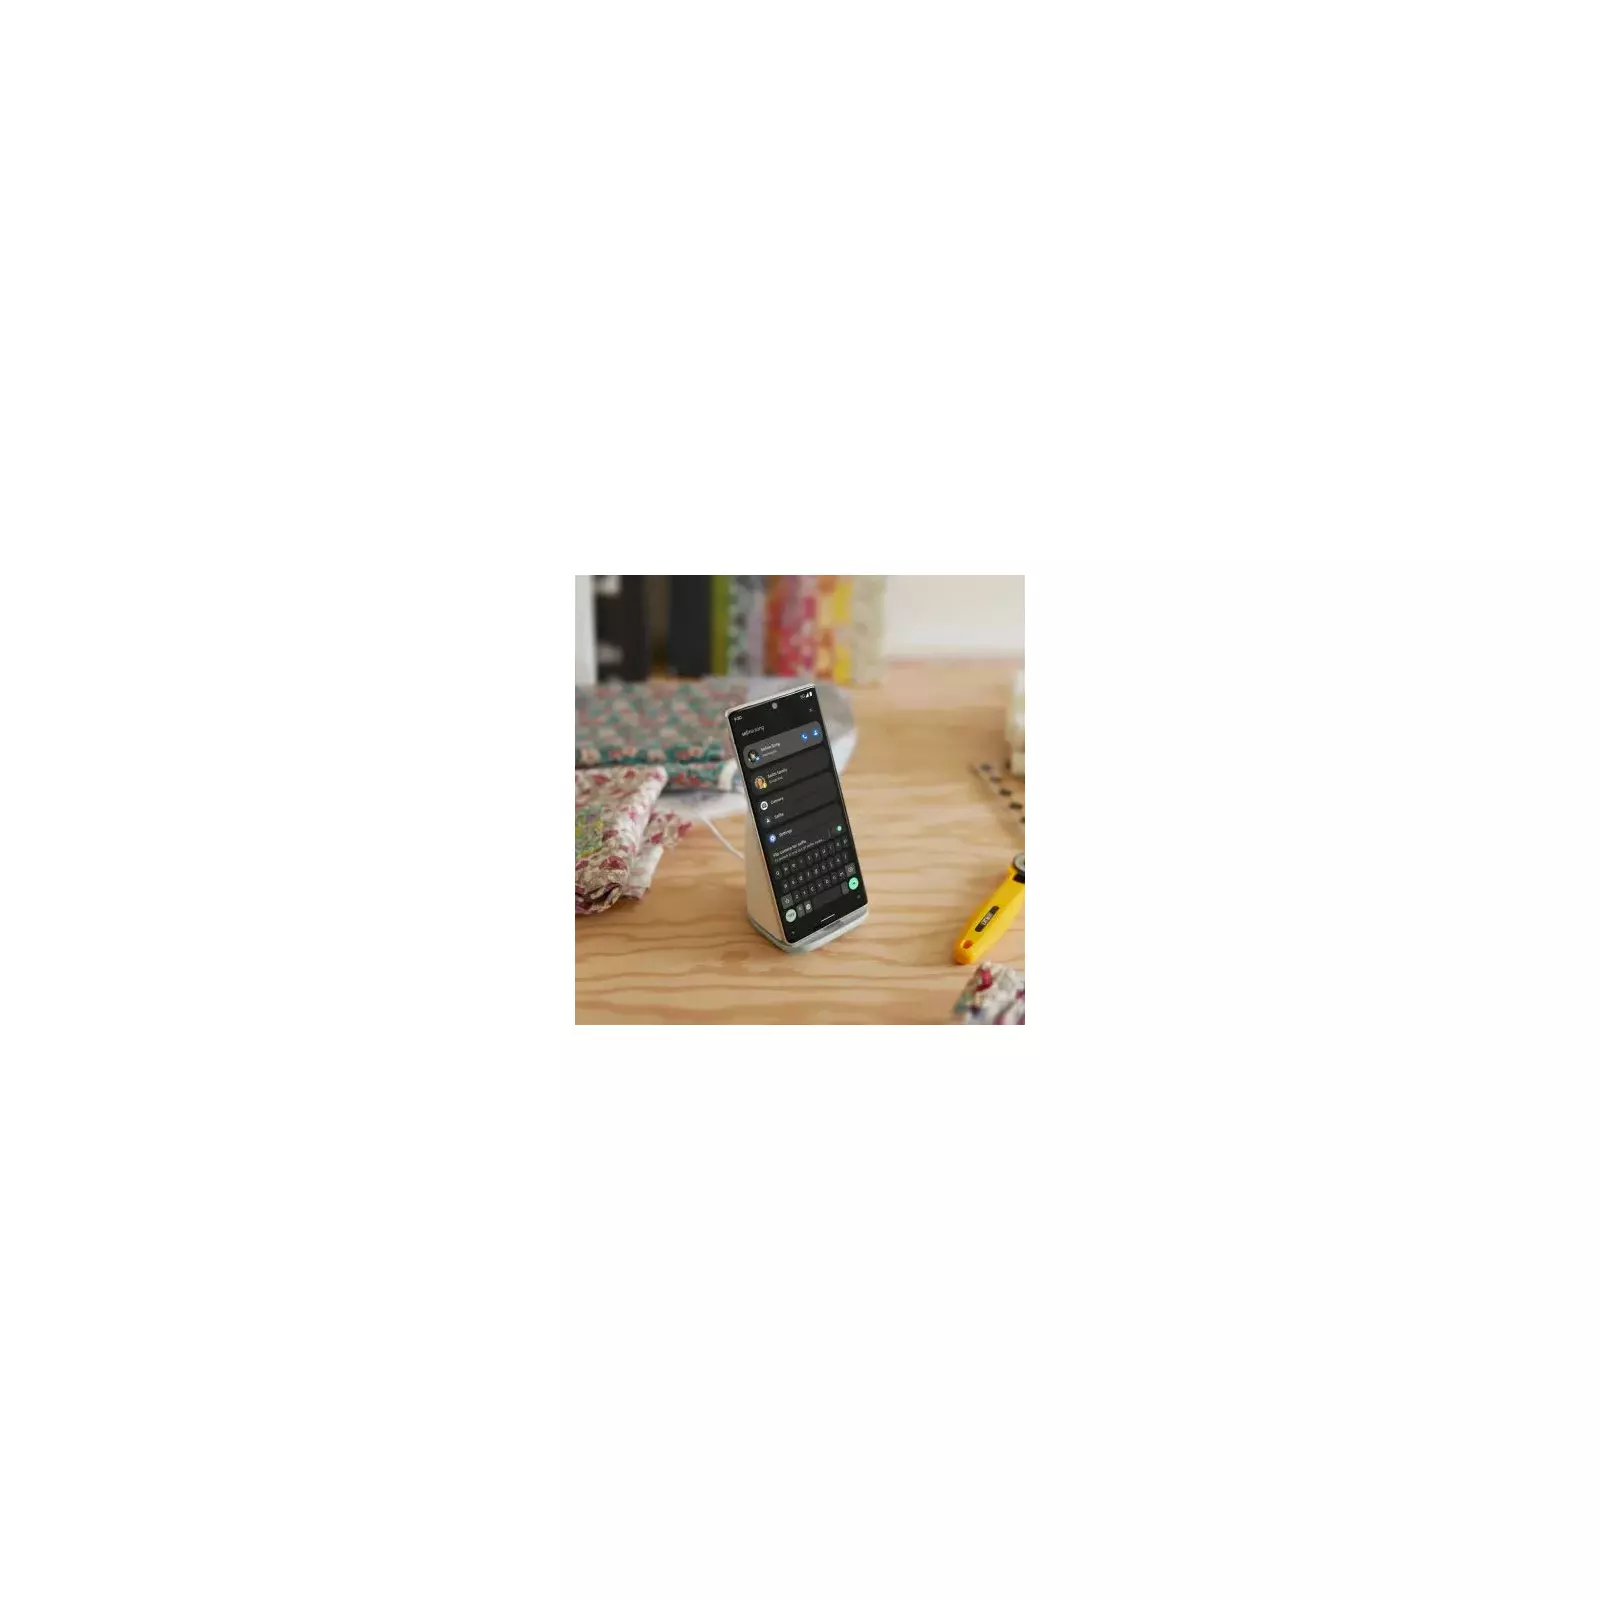 Google Pixel Stand (2nd Gen) – Google – Mobile phones